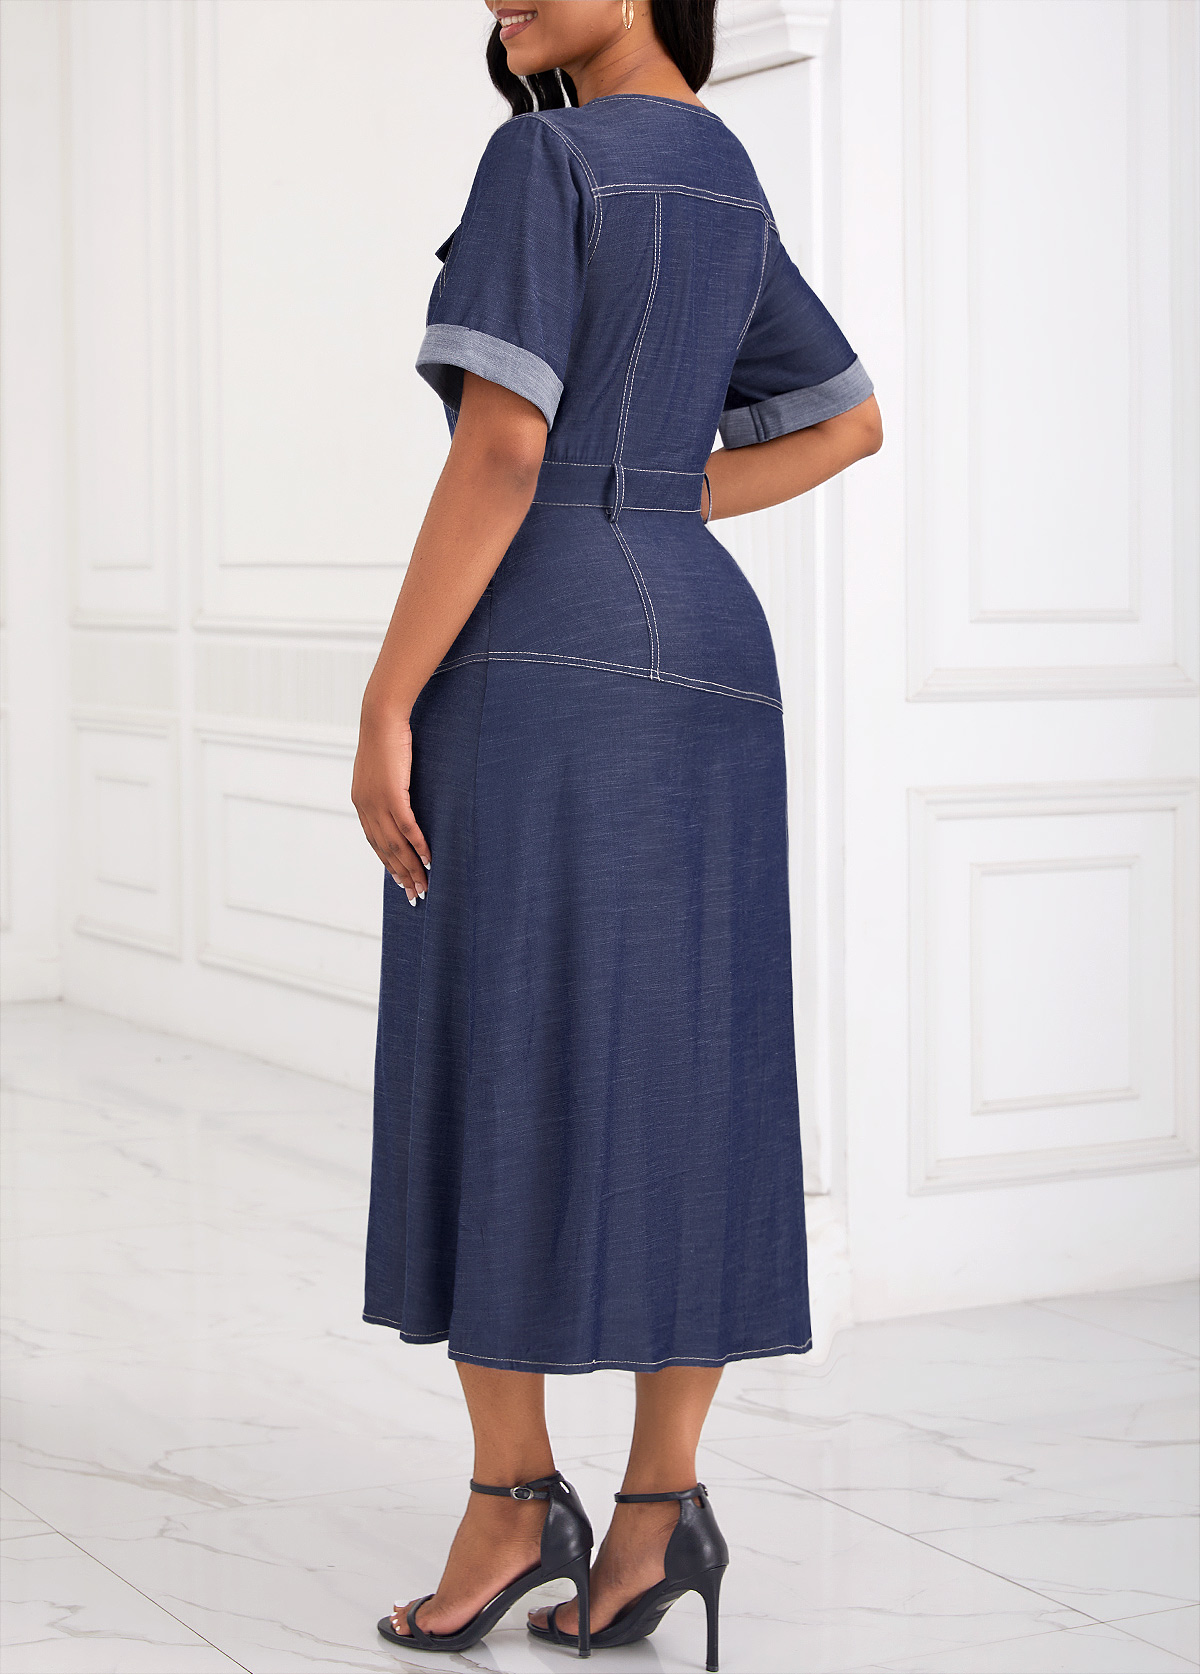 Denim Blue Pocket Button Detail Short Sleeve Dress